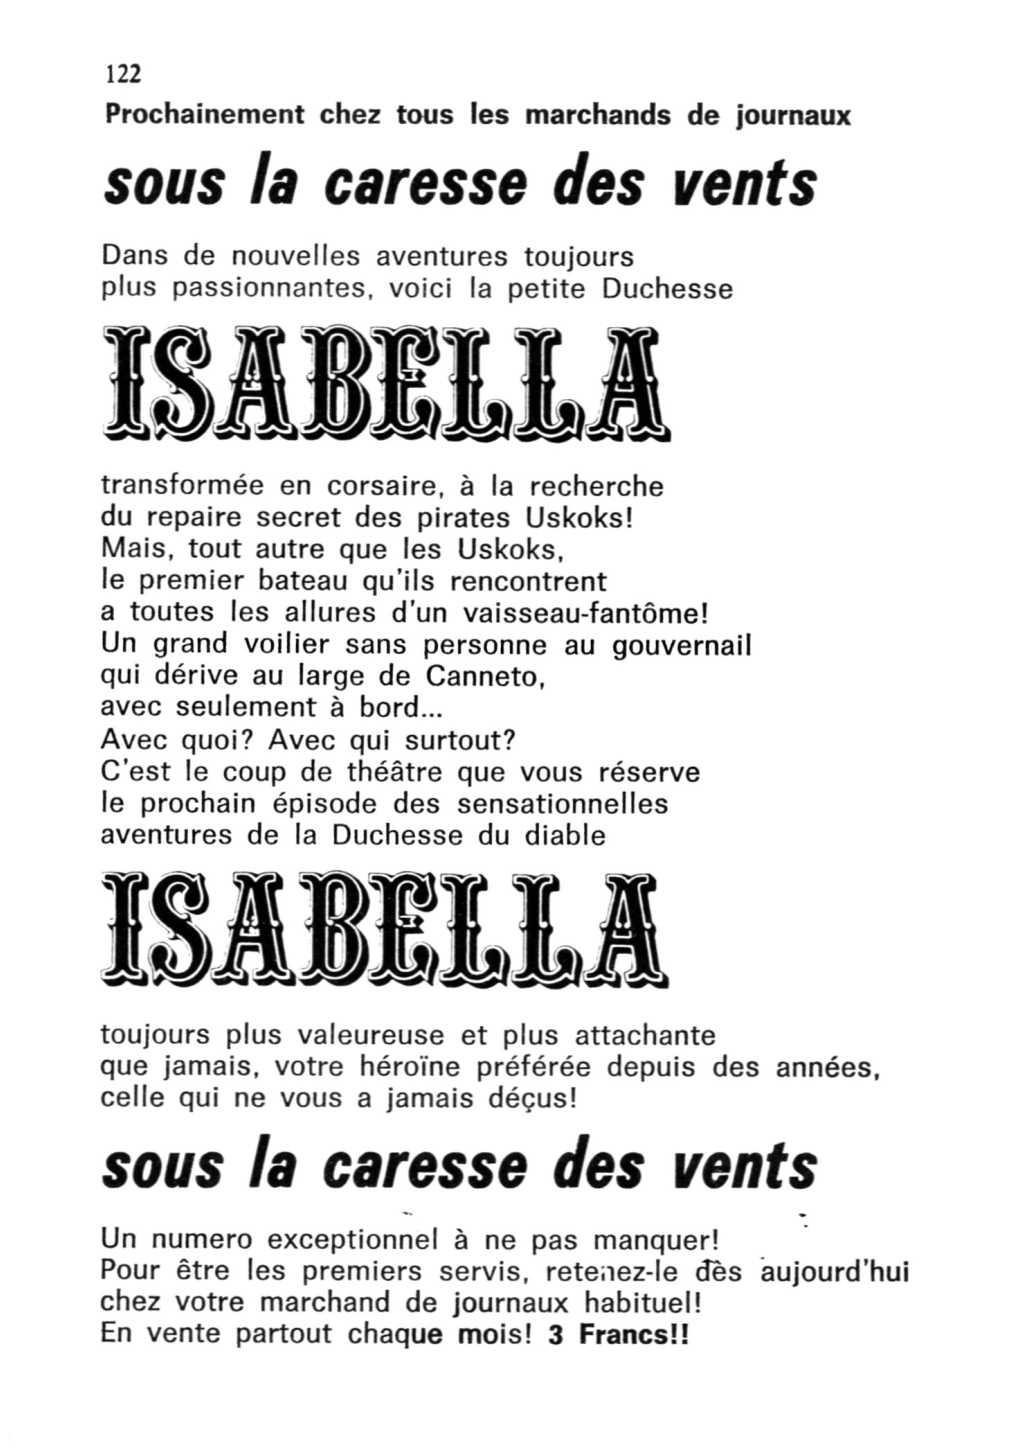 Isaebella 073 - La banière noire numero d'image 121